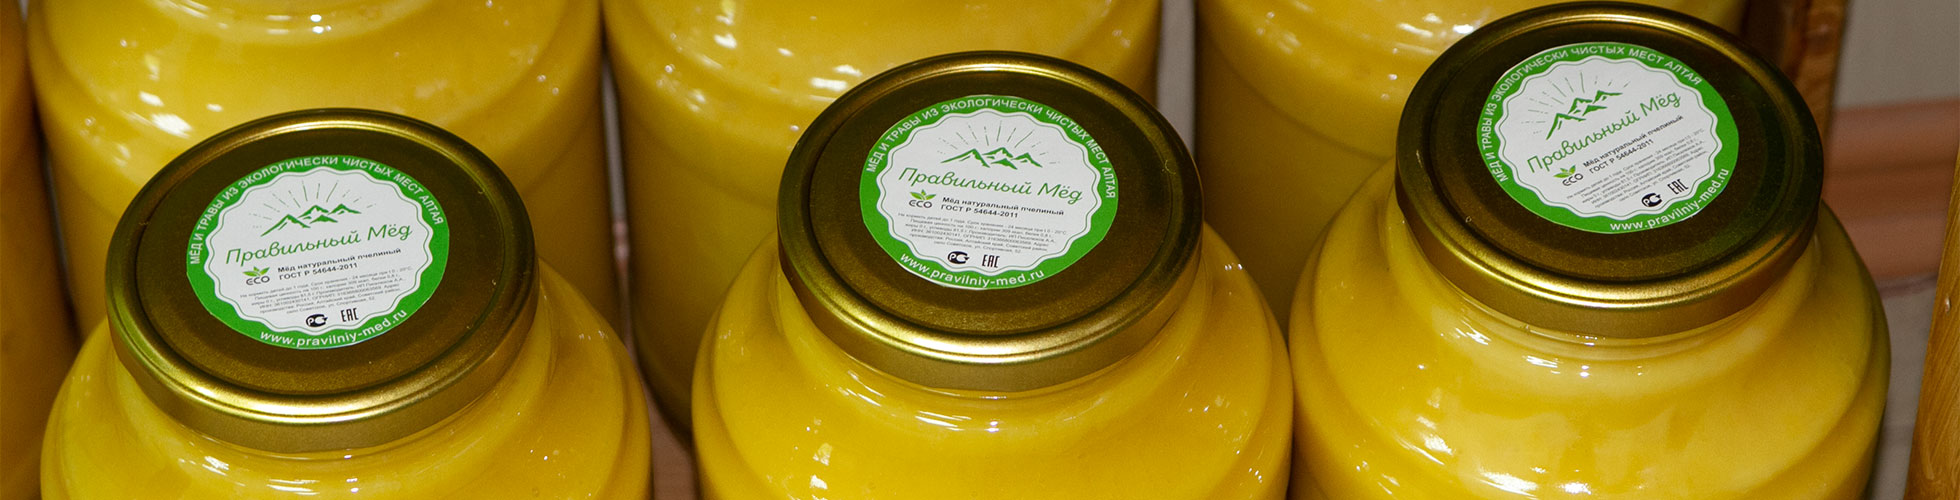 Банка цветочного мёда 1000 рублей